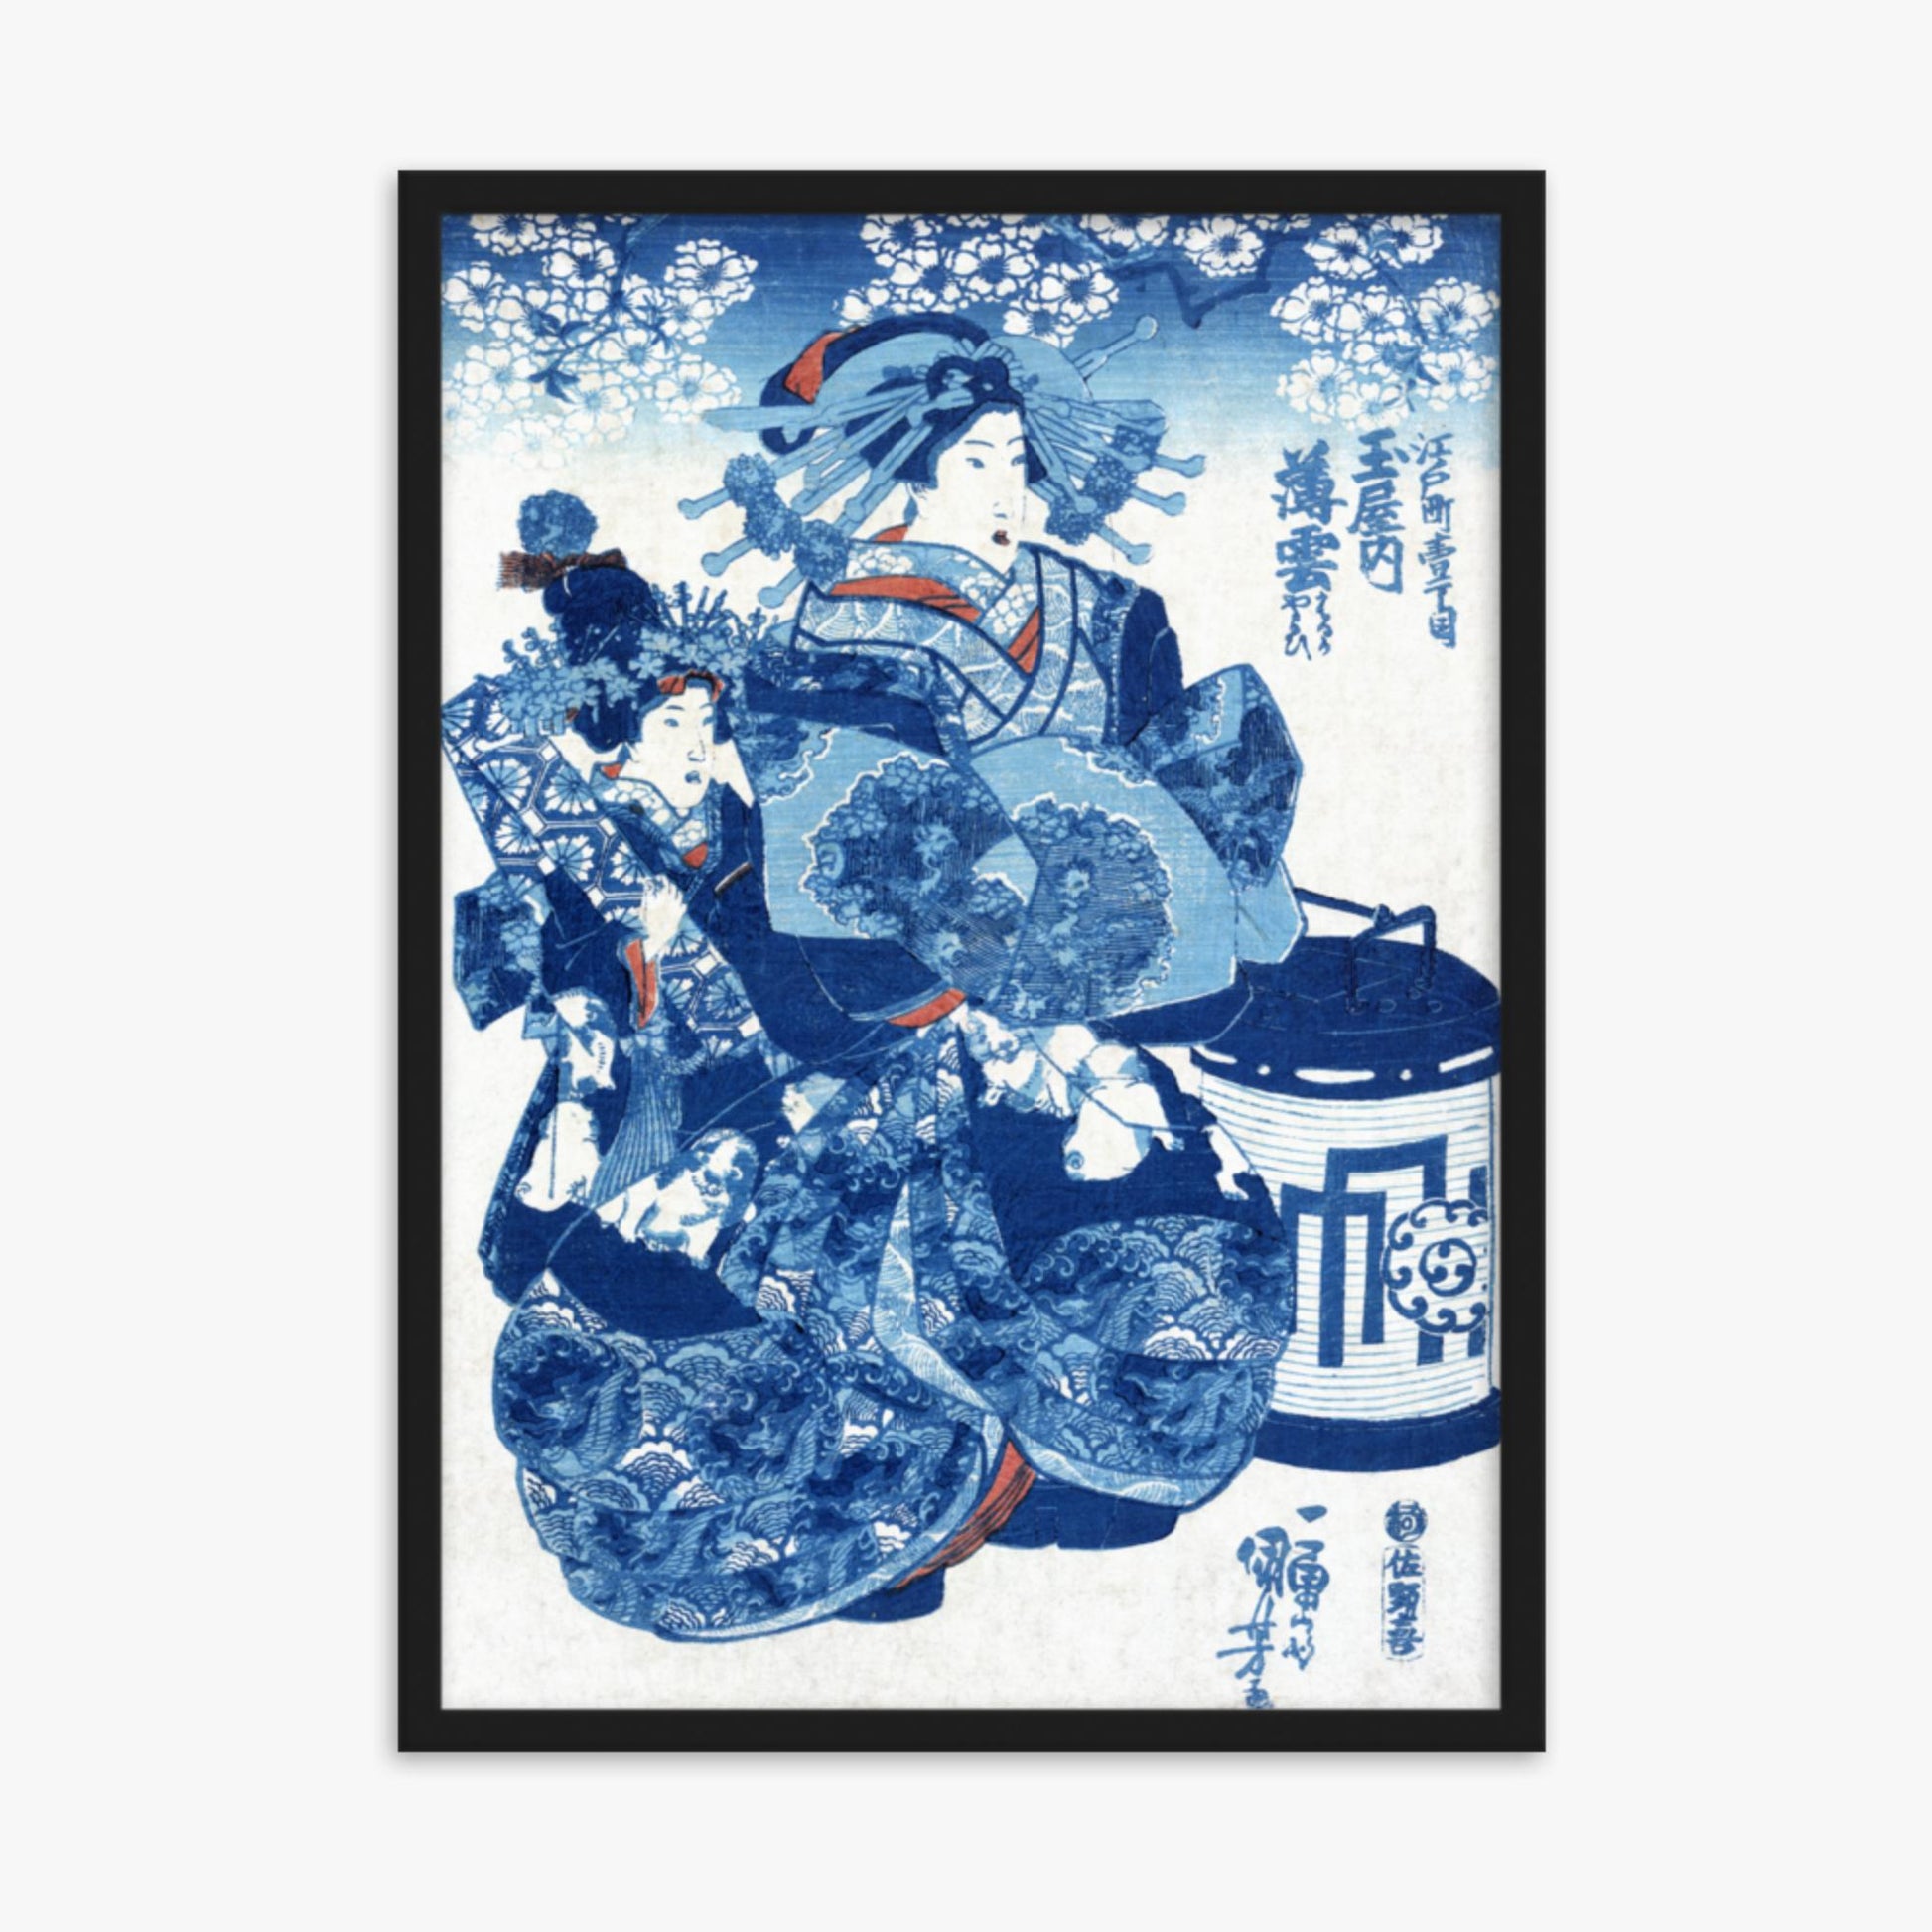 Utagawa Kuniyoshi - Tamaya uchi Usugumo 50x70 cm Poster With Black Frame